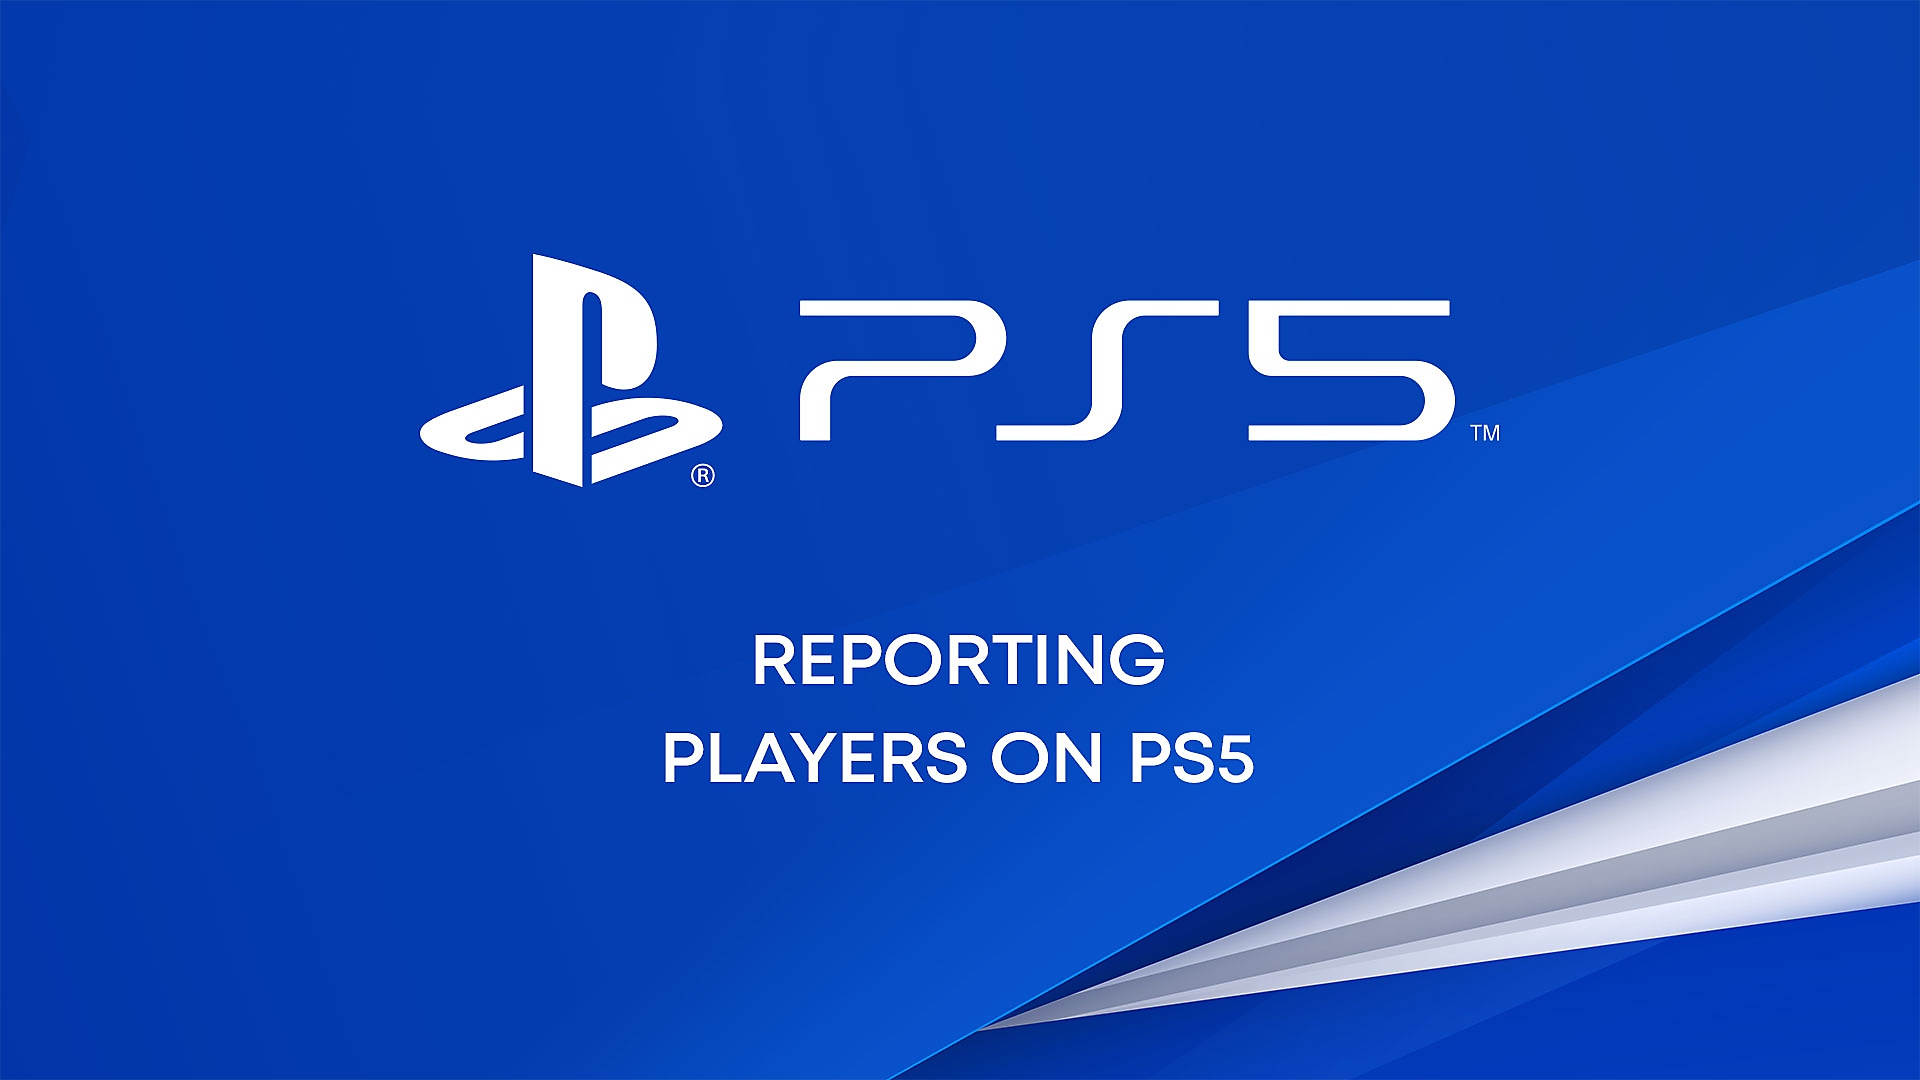 PS5でプレーヤーを報告する方法についてのYouTube動画。